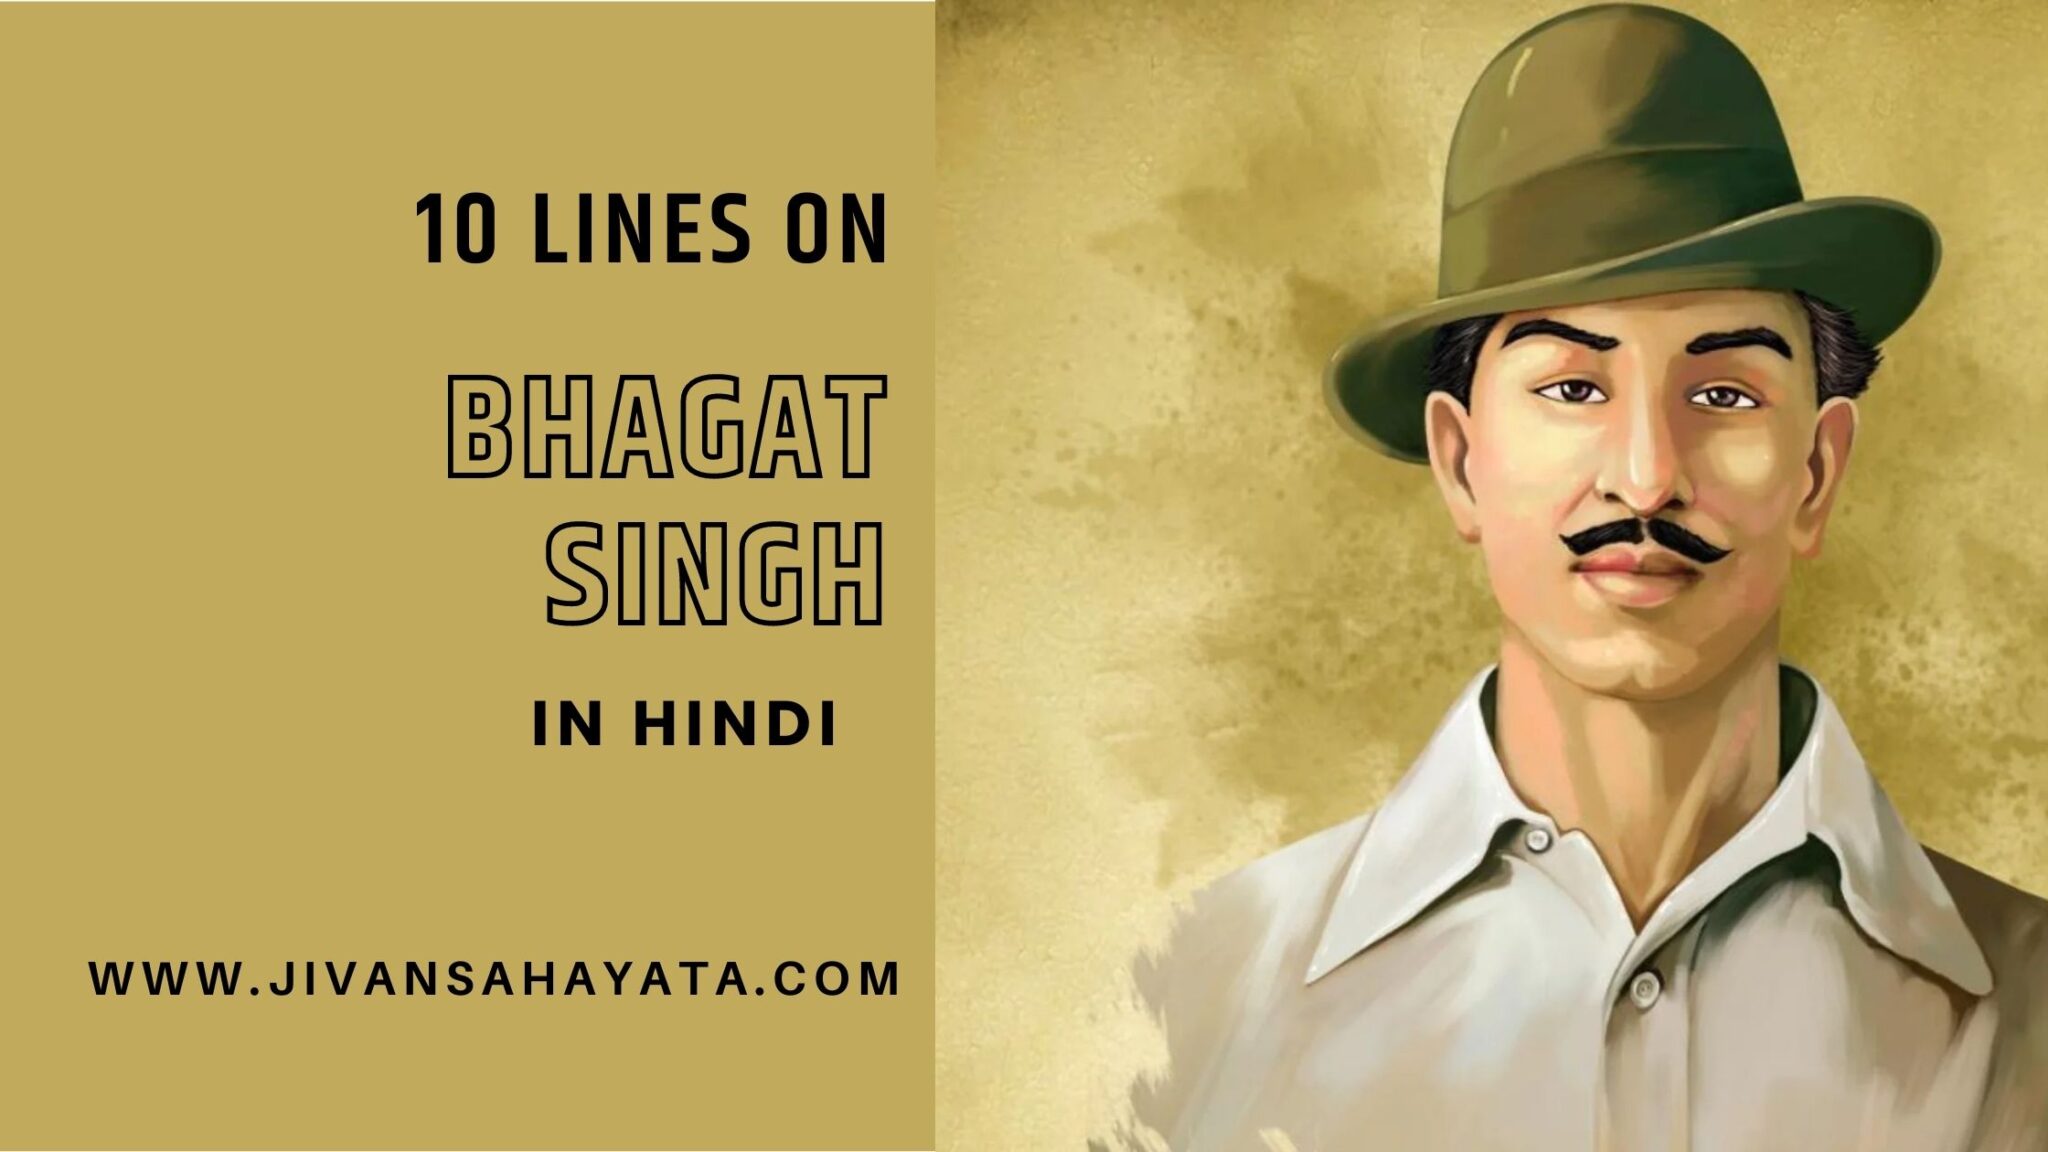 ᐅ भगत सिंह पर 10 लाइन- 10 Lines On Bhagat Singh In Hindi {2023}